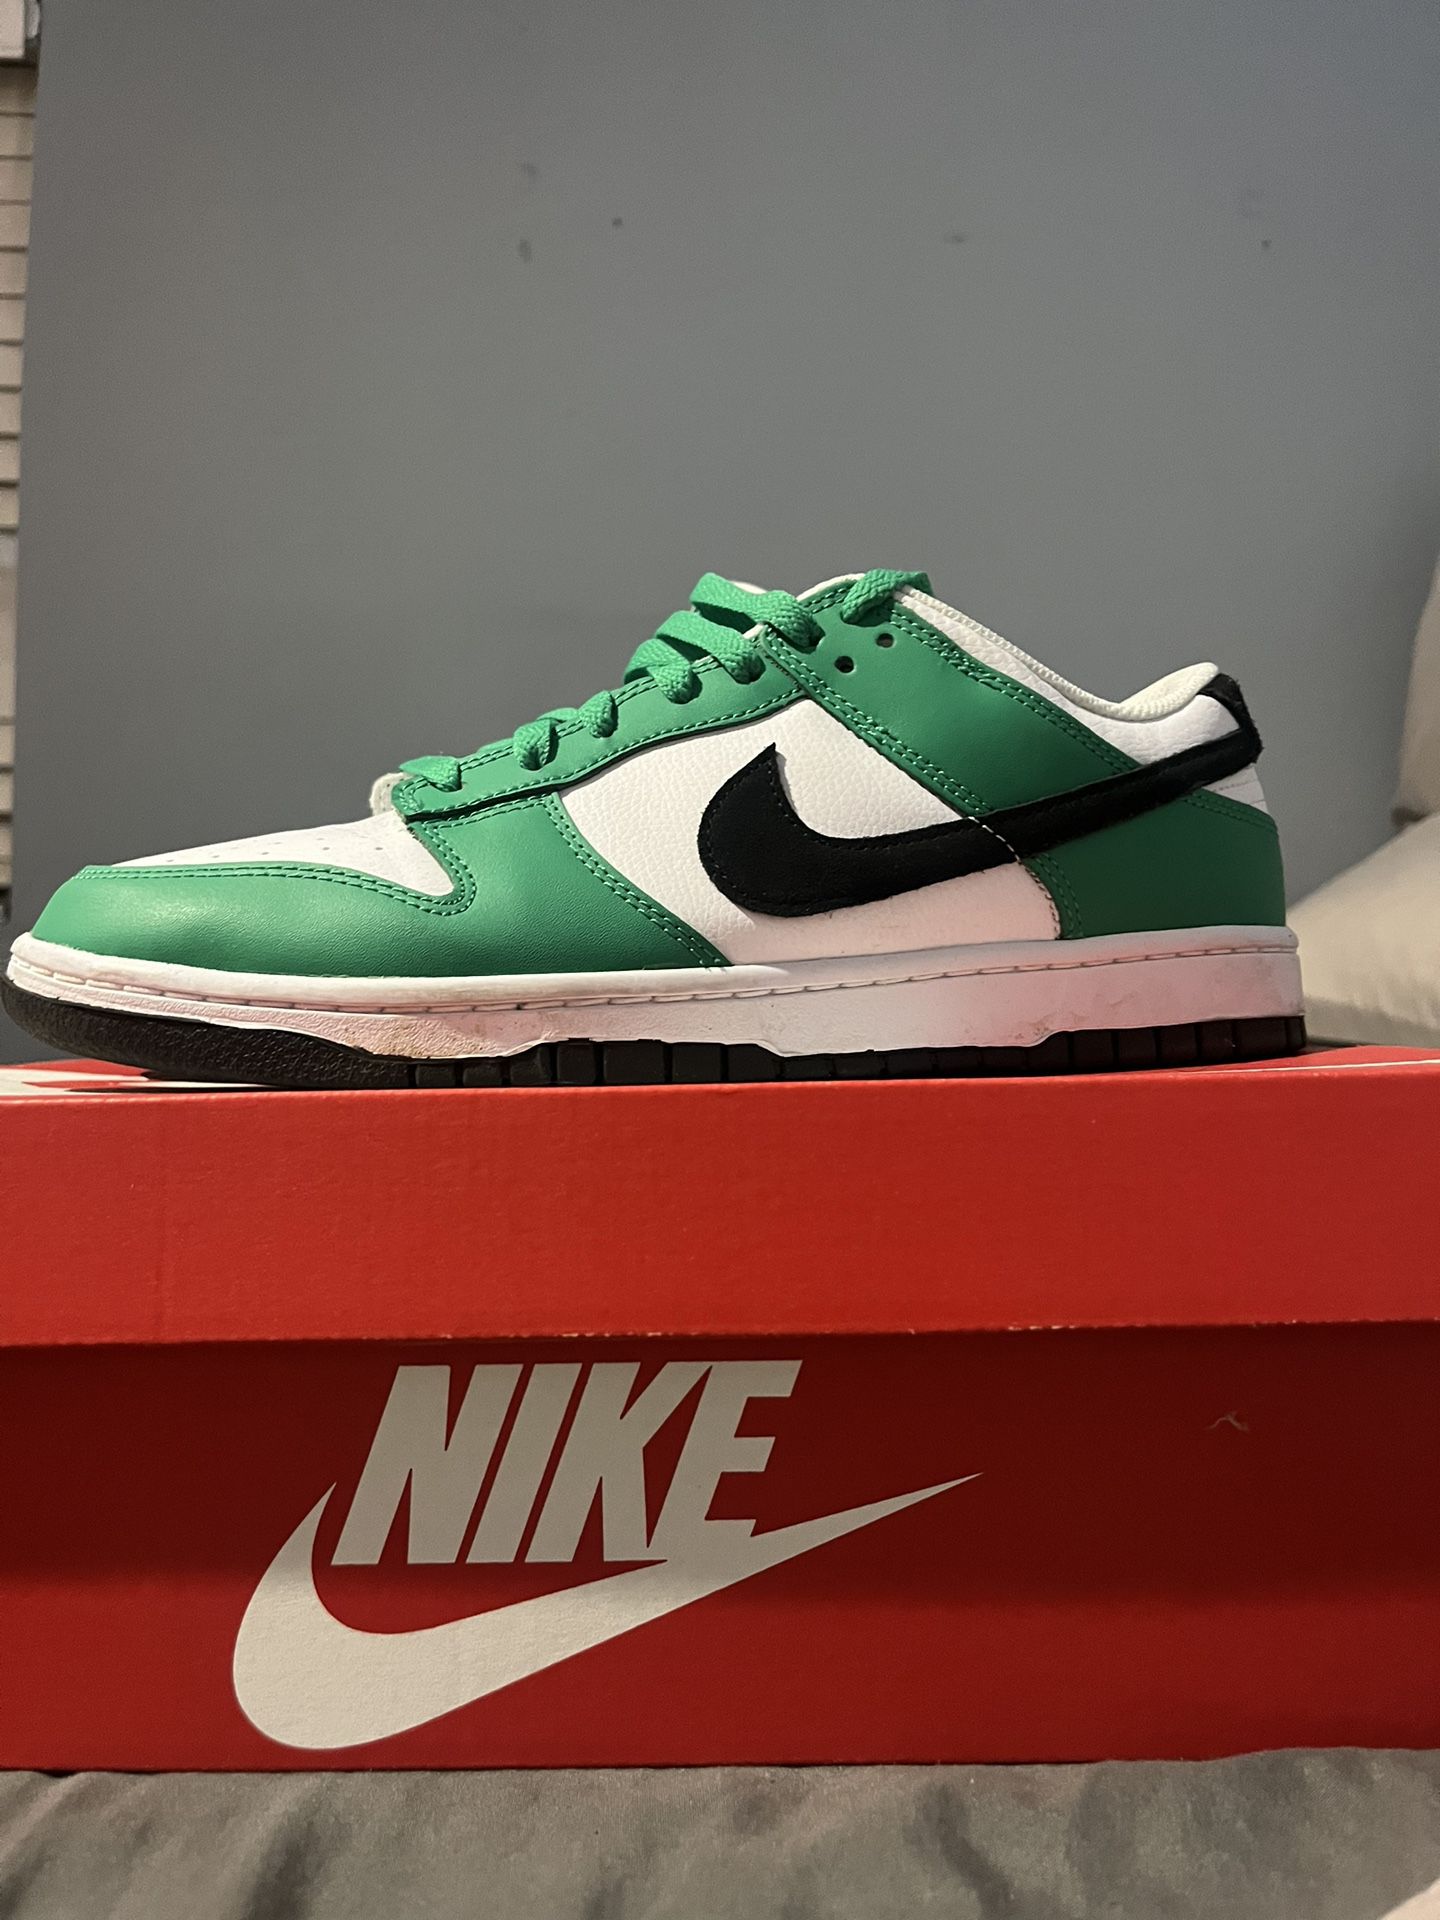 “Celtic Green” Nike Dunks 